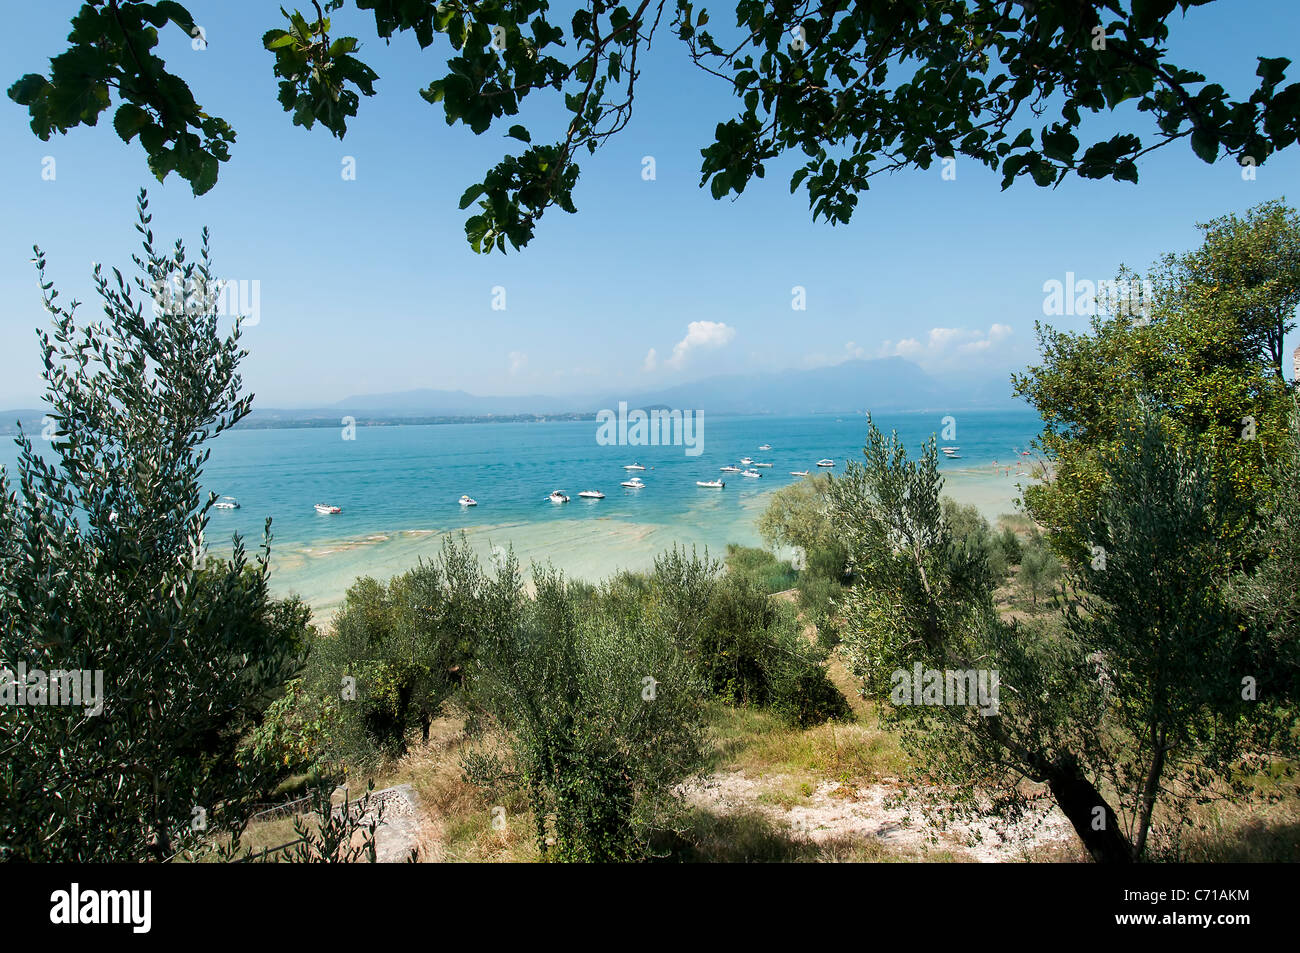 Segnali in gli amanti la passerella a Sirmione, sul lago di Garda, regione Lombardia, Italia, Europa Foto Stock